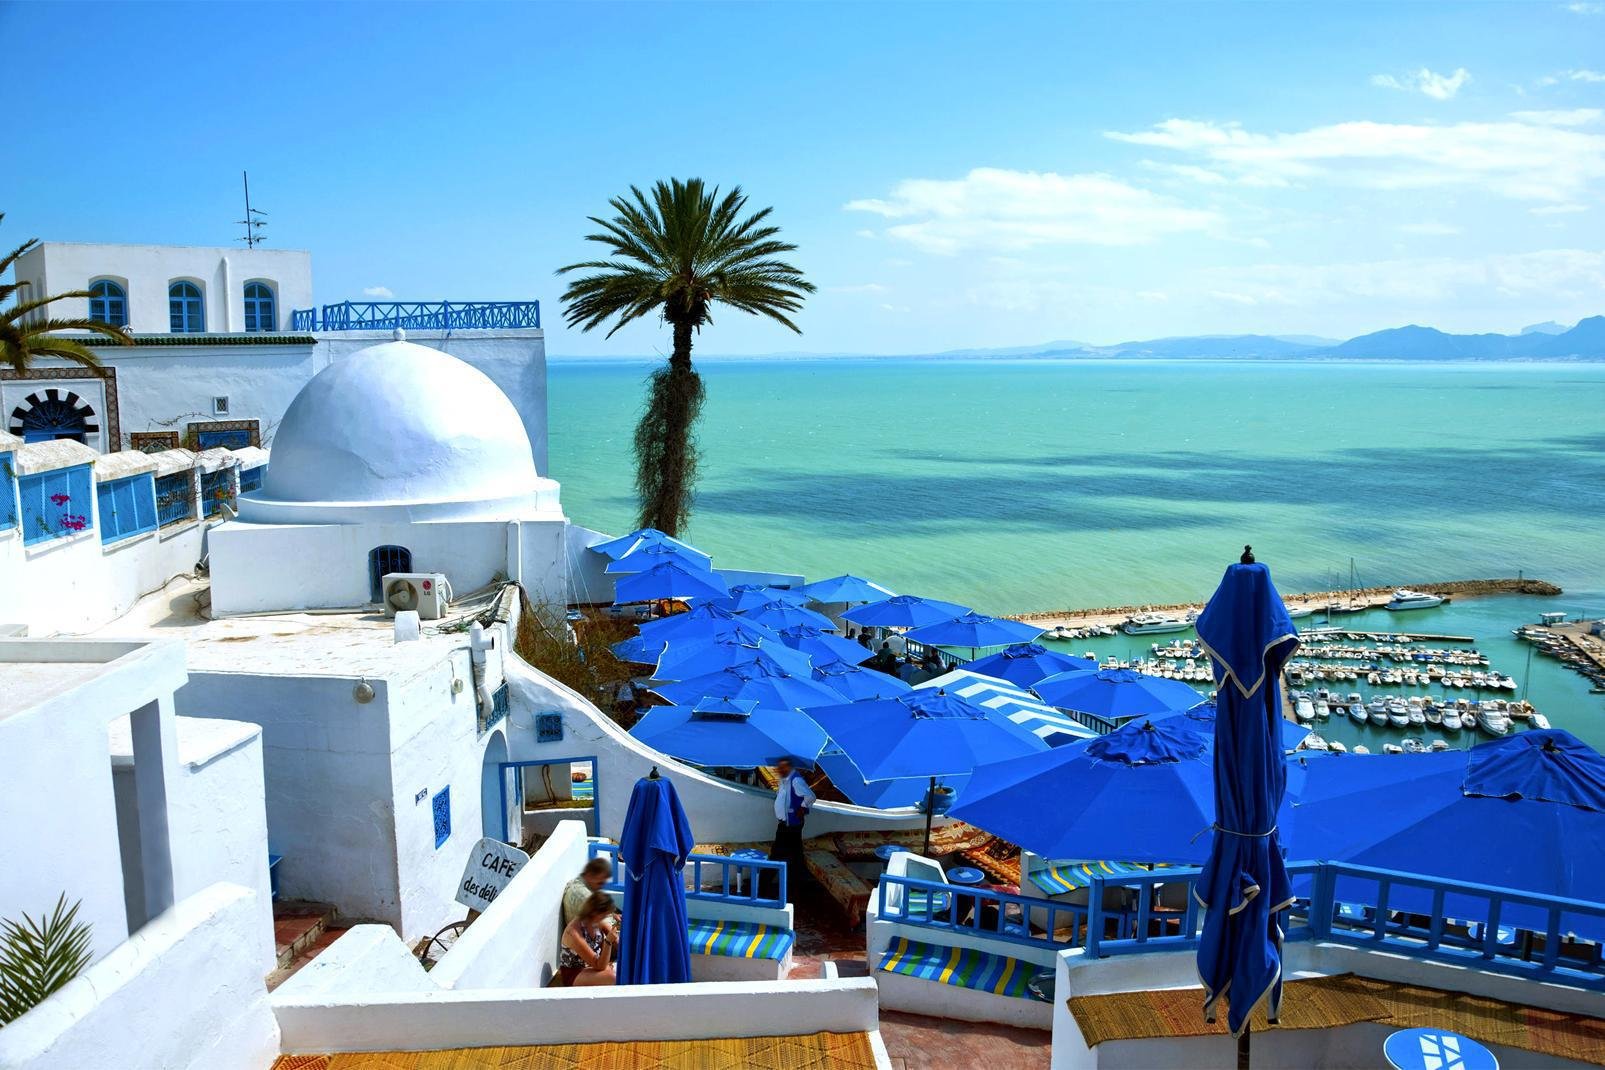 Sidi Bou Saïd, planté au pied du djebel Manâr (montagne de Phare) face à la Grande Bleue, à 17 km au nord-est de Tunis, est le village le plus visité du pays. Ses ruelles immaculées, son bleu limpide inscrit sur portes et fenêtres, ses moucharabiehs mystérieux, ses toits tout en rondeurs et sa douce atmosphère méditerranéenne en font un lieu hors du temps... qu'il est préférable de découvrir hors saison ...